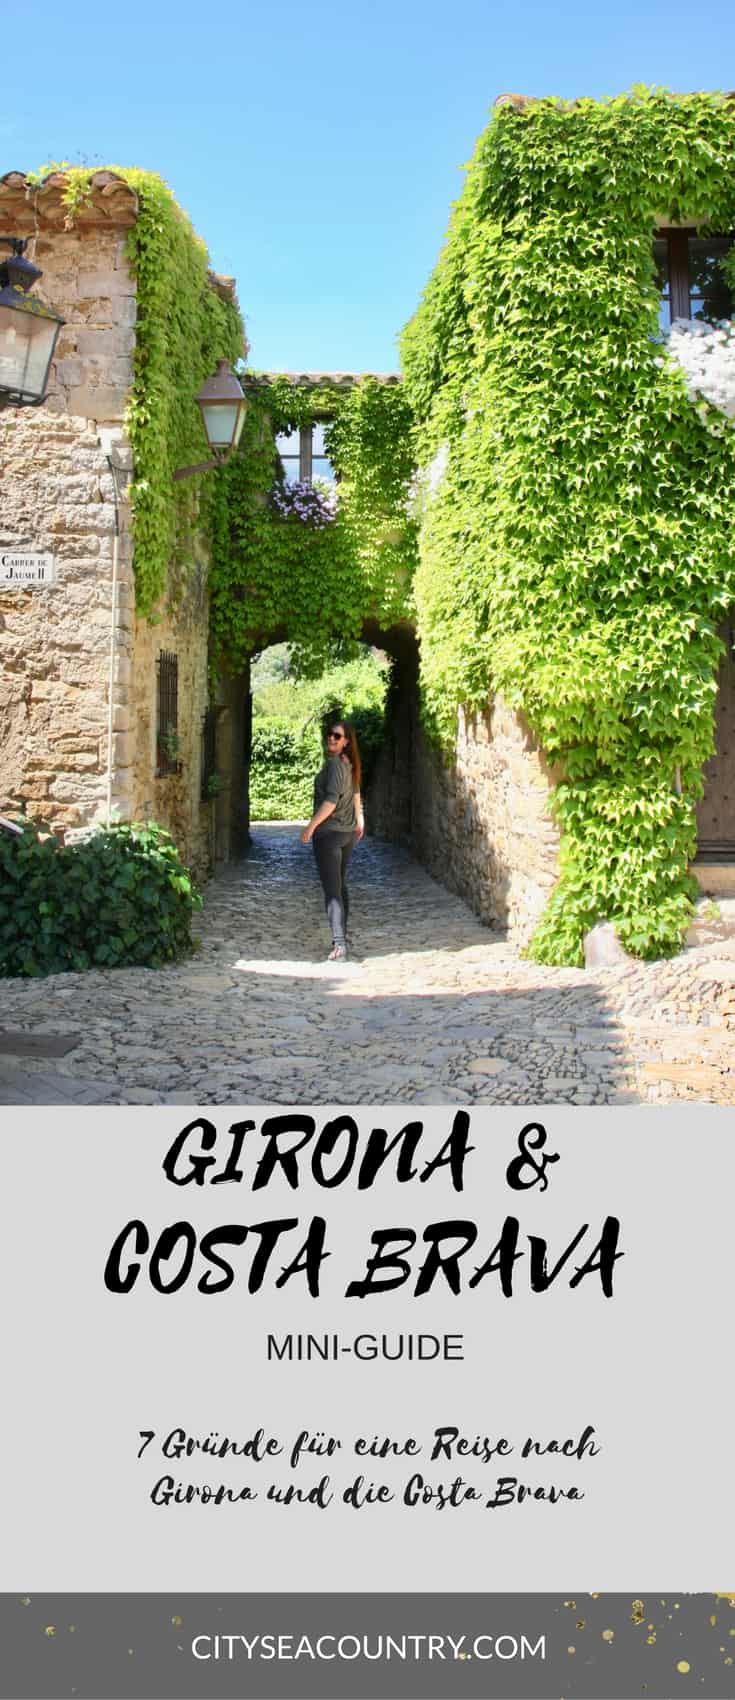 Barcelona oder Girona? 7 gute Gründe für eine Reise nach Girona und die Costa Brava